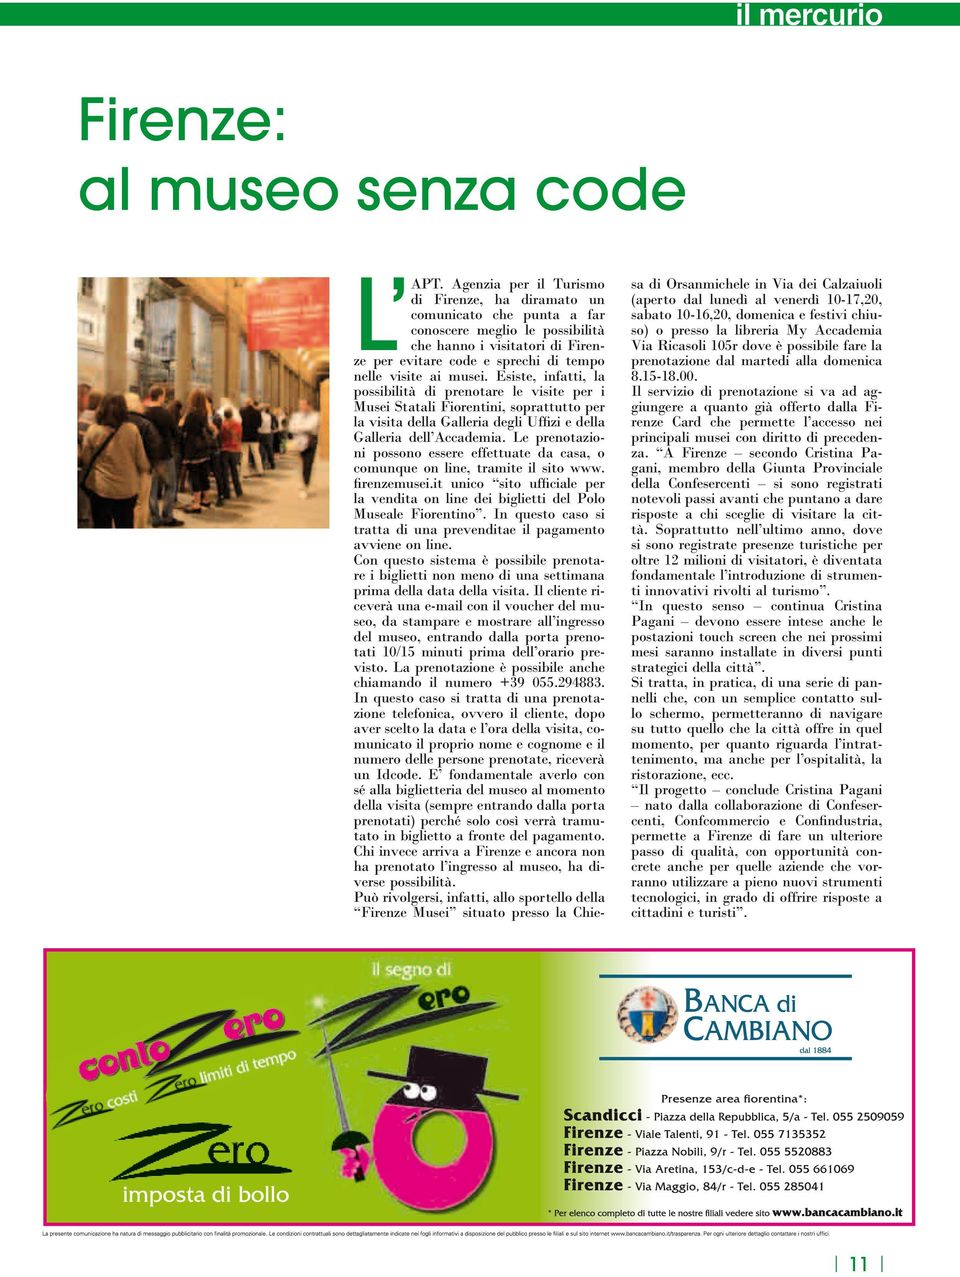 Esiste, infatti, la possibilità di prenotare le visite per i Musei Statali Fiorentini, soprattutto per la visita della Galleria degli Uffizi e della Galleria dell Accademia.